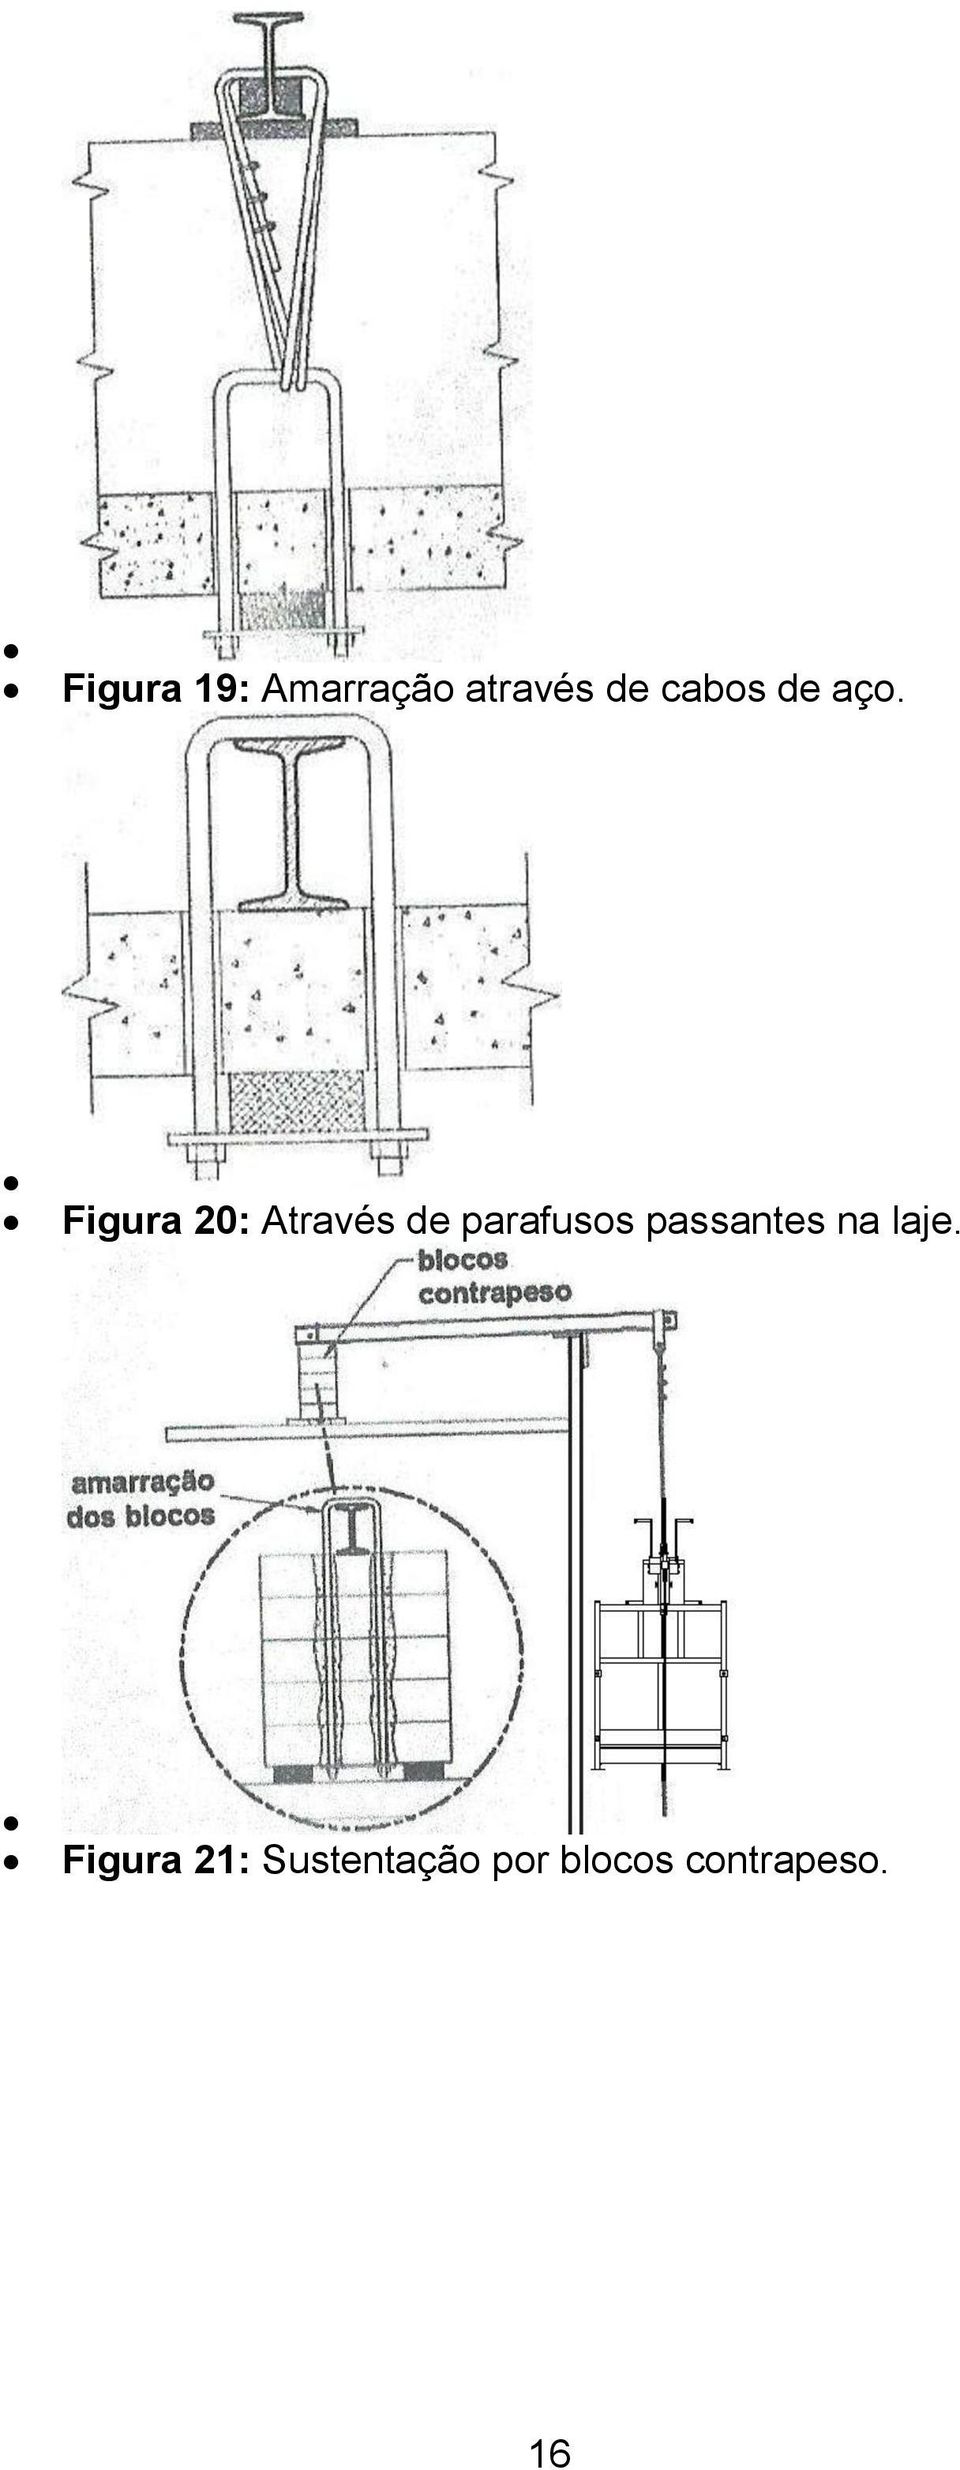 Figura 20: Através de parafusos